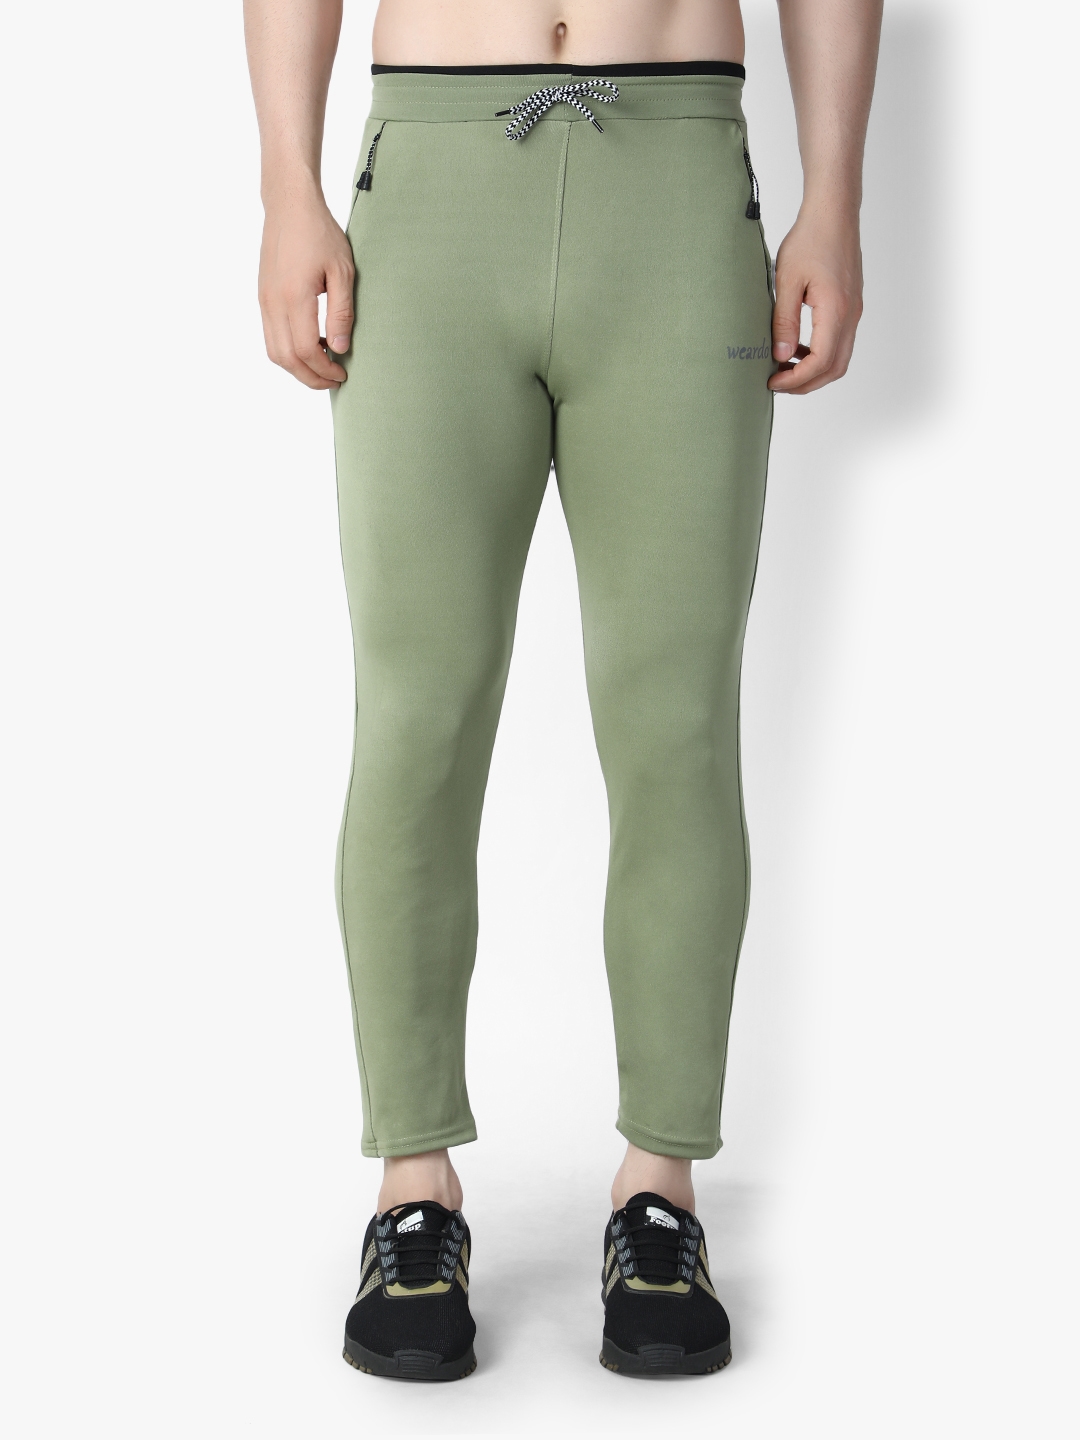 Weardo | Weardo Men's Solid Green Jogger in 4 Way Stretchable Fabric